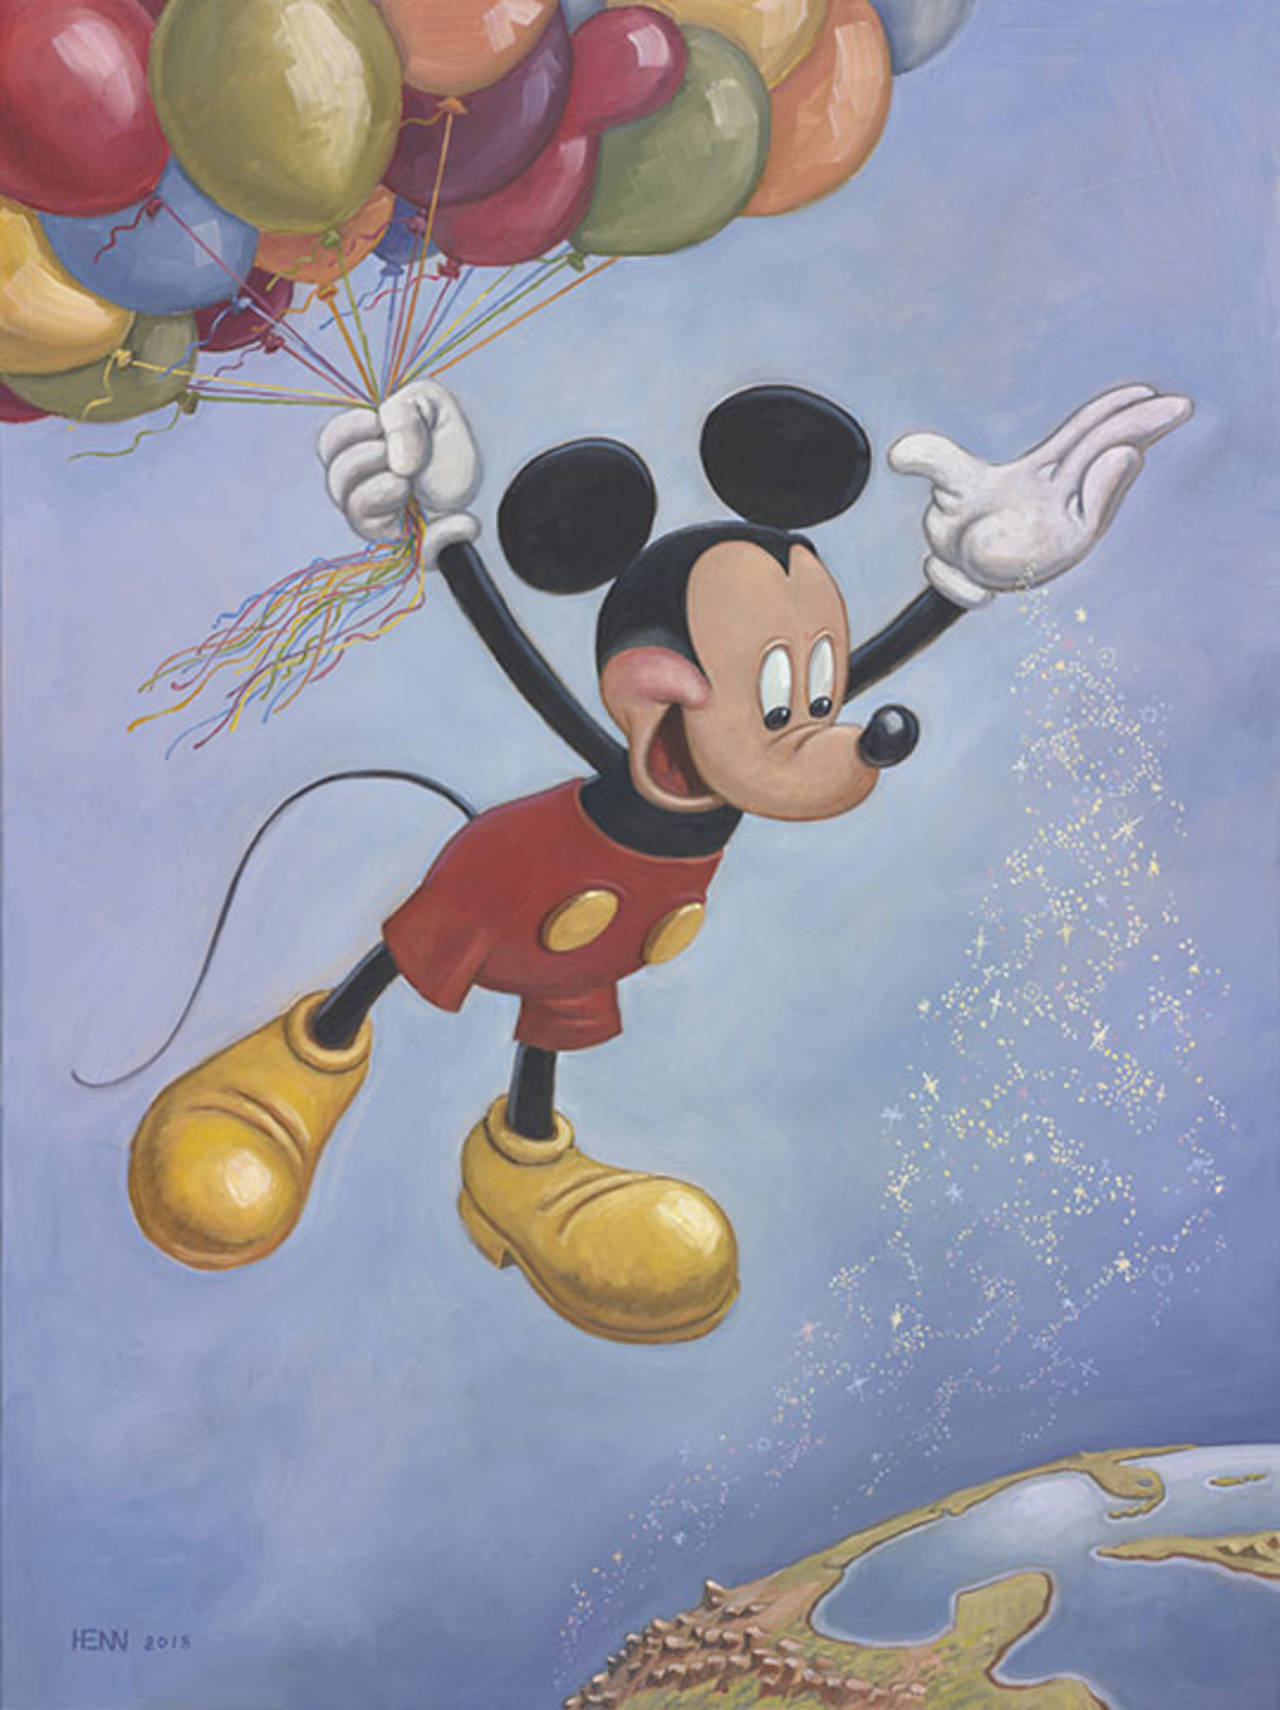 Retrato. La obra que conmemora el aniversario número 90 de 'Mickey Mouse' fue hecha por el artista Mark Henn. (CORTESÍA) 